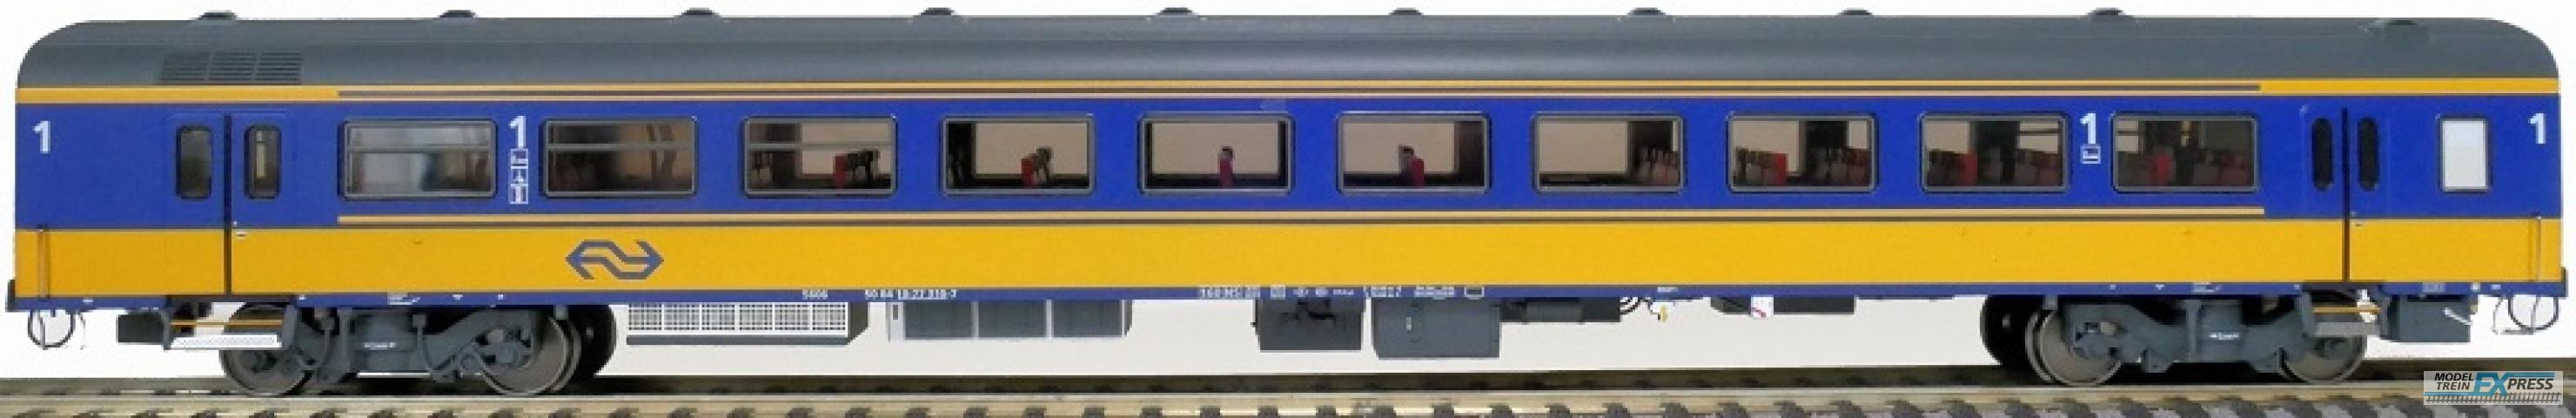 Exact-train 11174 NS ICRm Garnitur 4 Reisezugwagen A( Neue farbe Gelb / Blau) mit Beleuchtung und Figuren, Ep. V